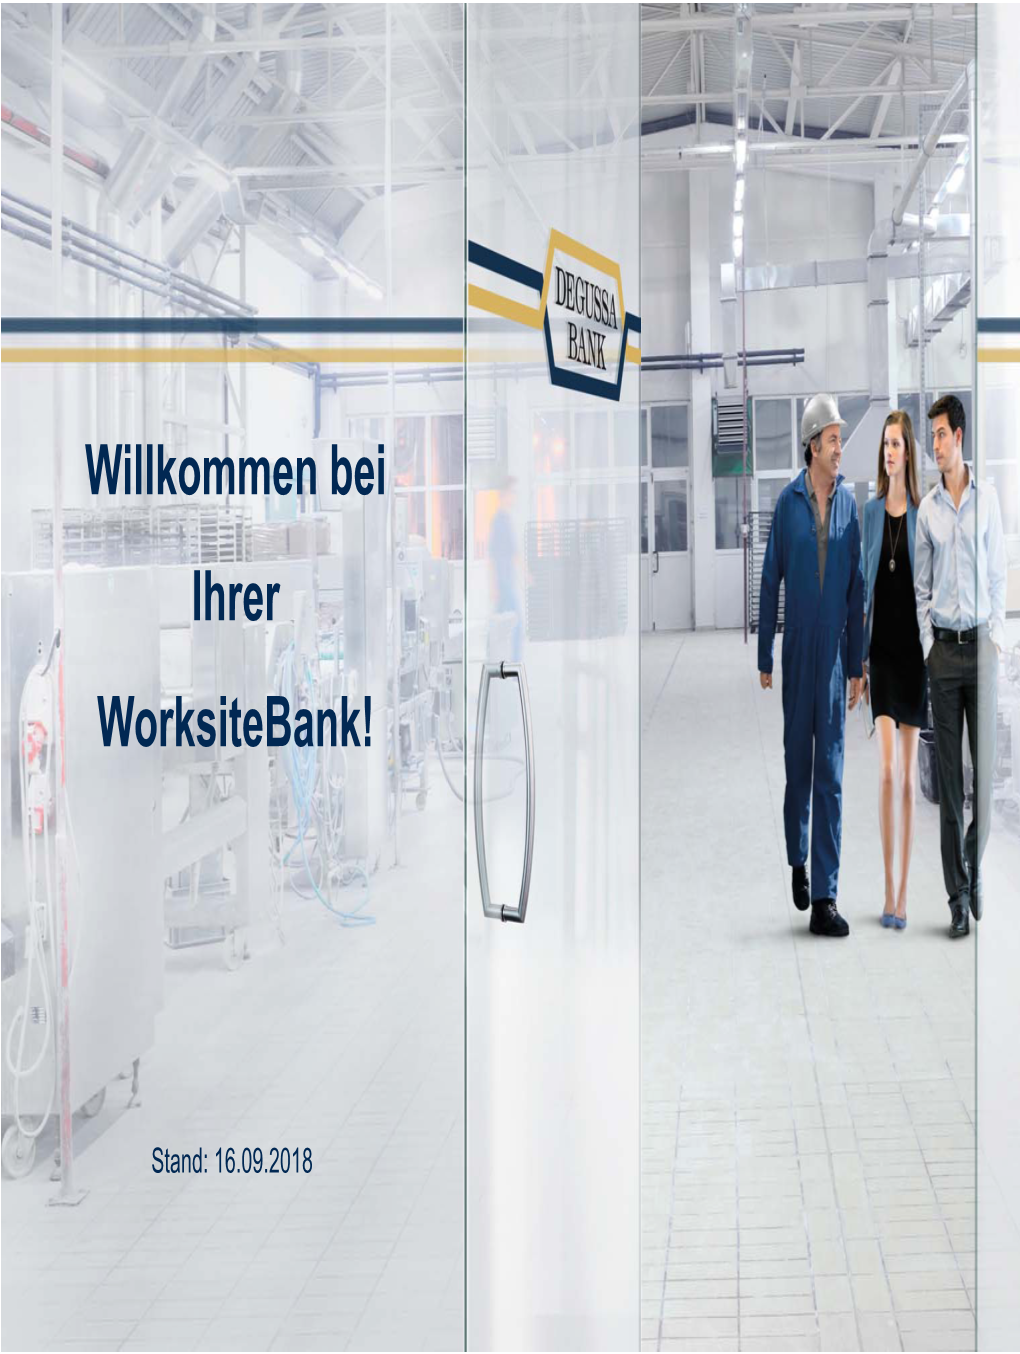 Willkommen Bei Ihrer Worksitebank!